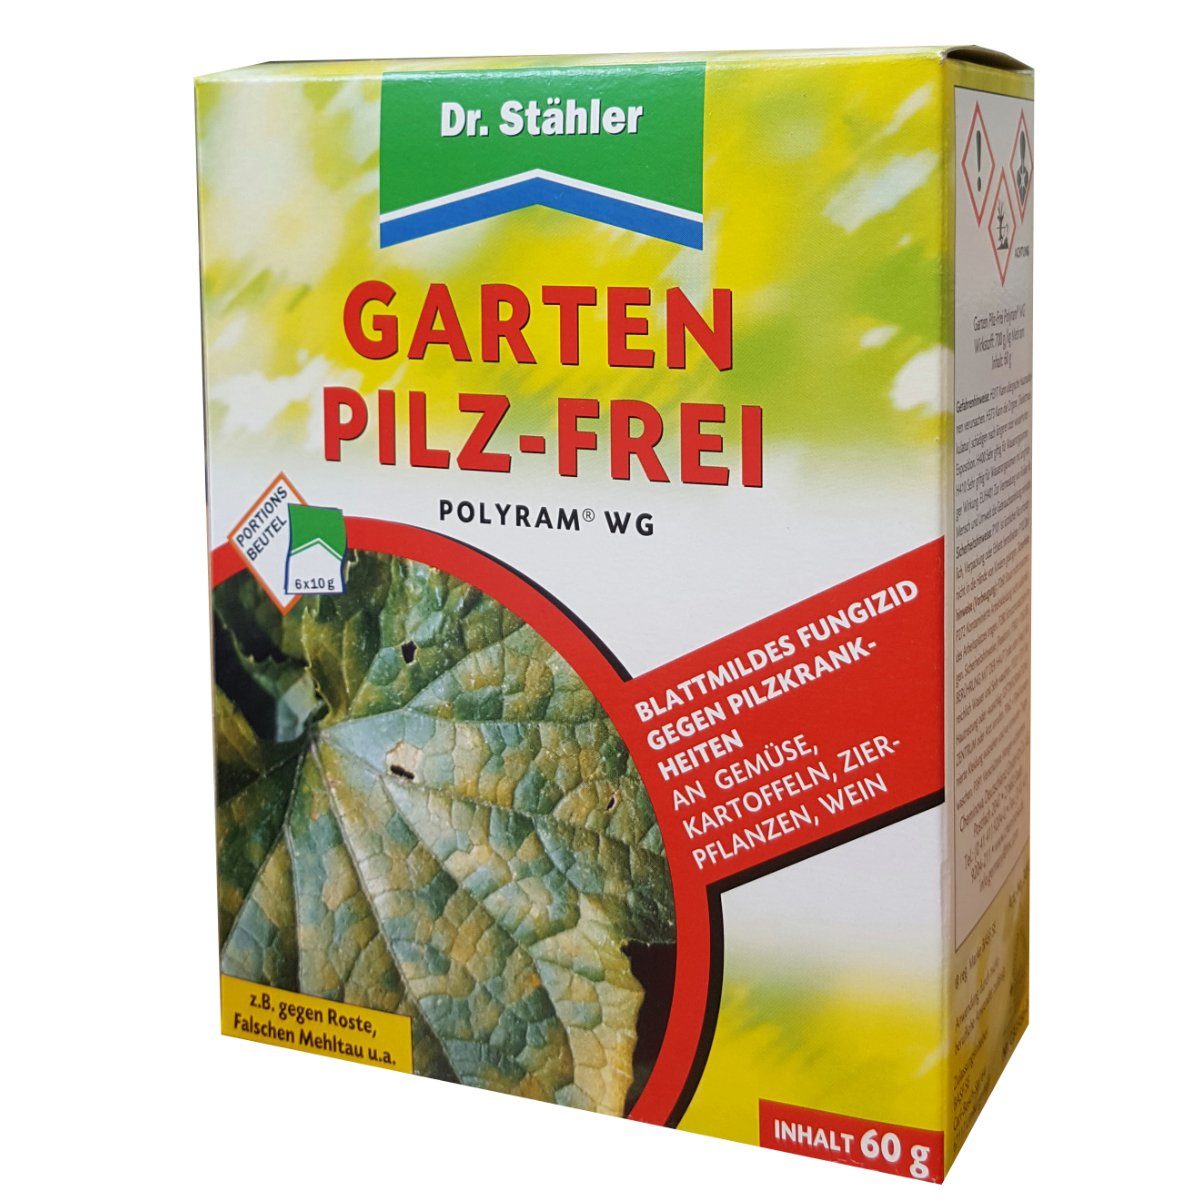 Dr. Stähler Pflanzen-Pilzfrei 60 g Garten Pilz-Frei Dr. Stähler Polyram Fungizid Pflanzen Pilzfrei, 60 g